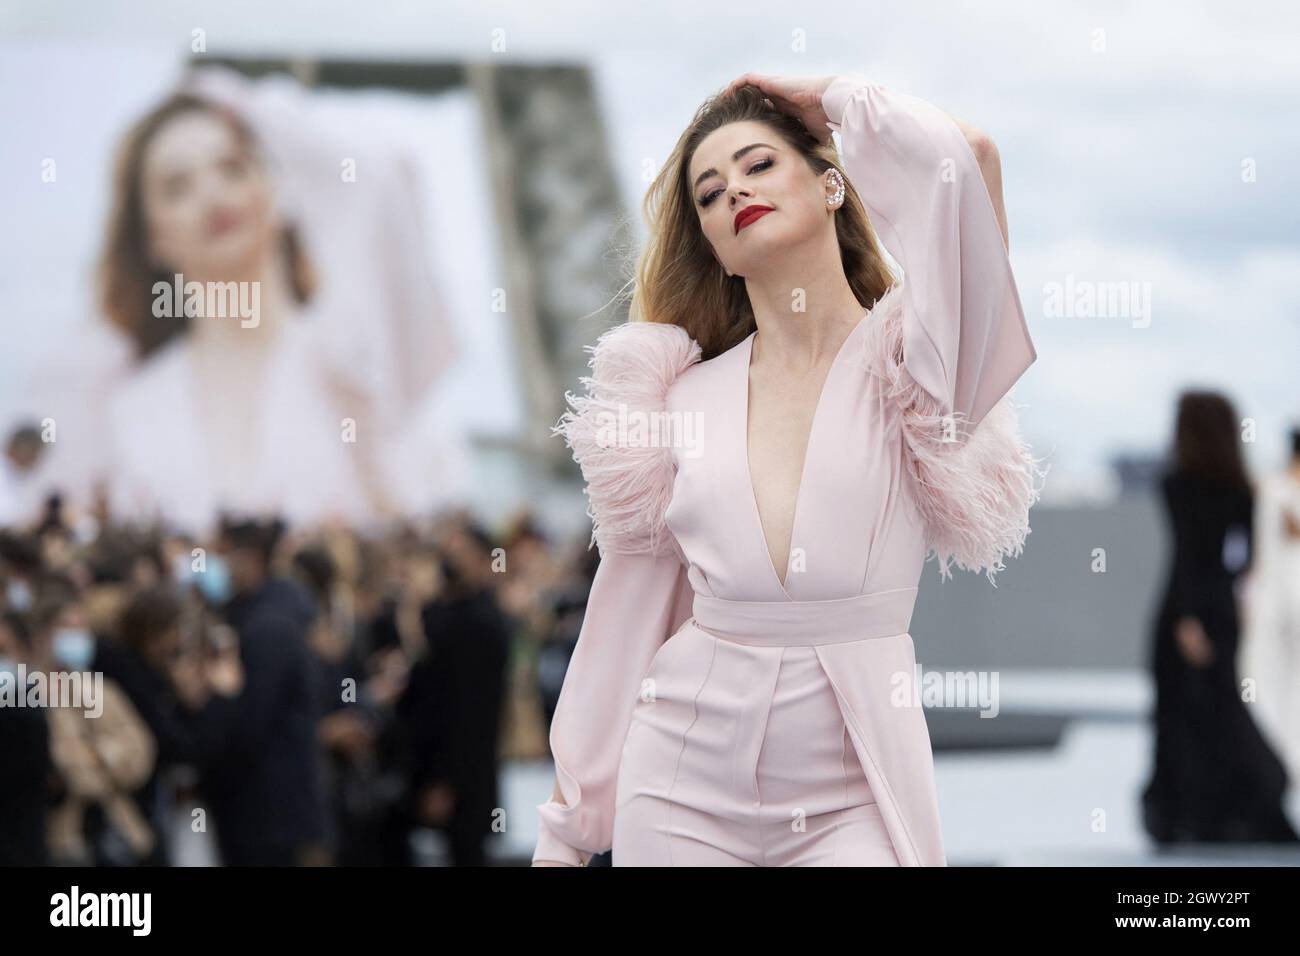 Amber Heard cammina sulla pista durante lo spettacolo l'Oreal come parte della Paris Fashion Week Womenswear Primavera/Estate 2022 a Parigi, Francia, il 03 ottobre 2021. Foto di Aurore Marechal/ABACAPRESS.COM Foto Stock